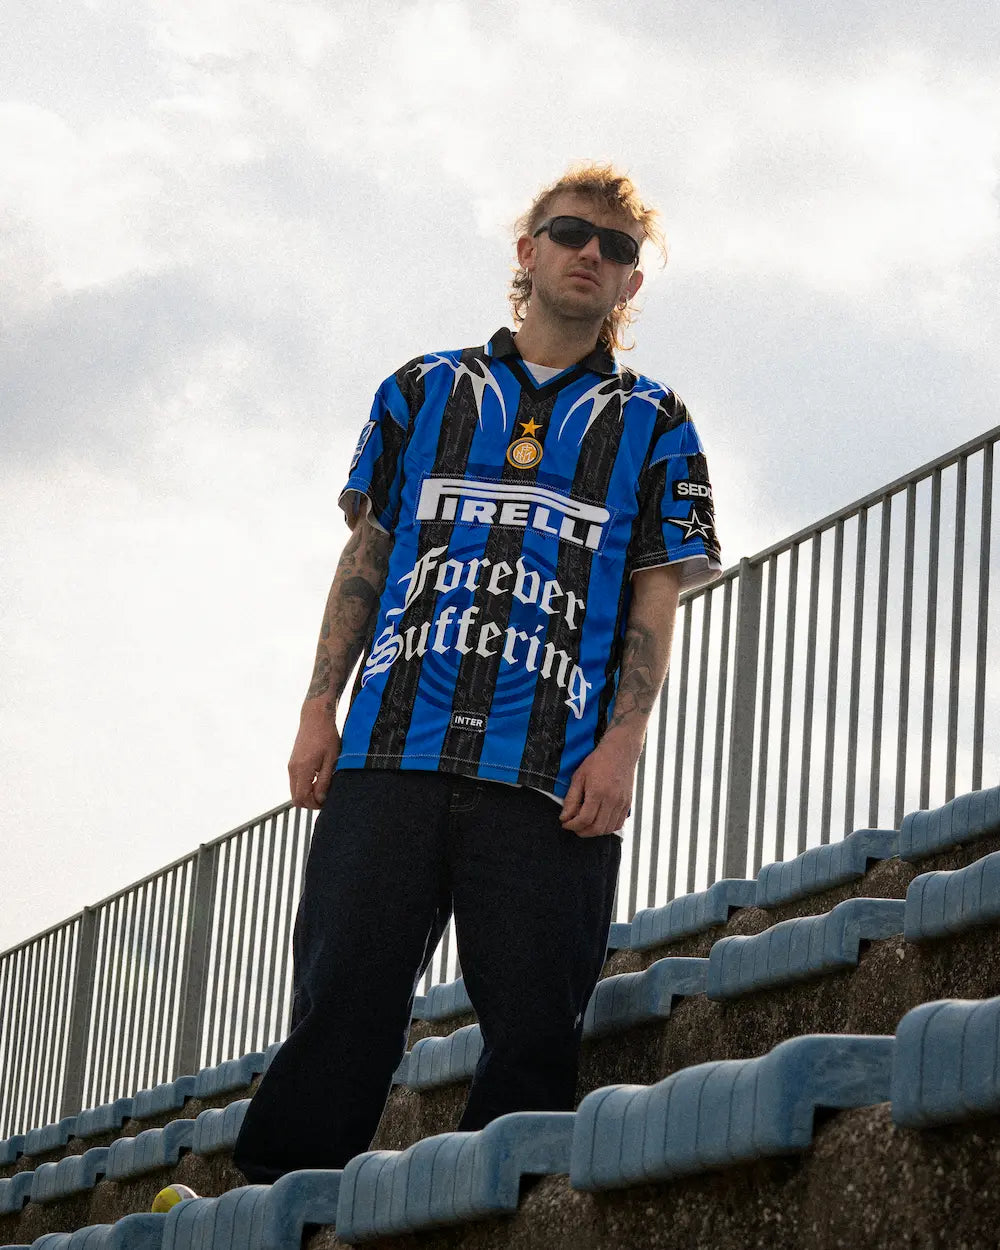 FC Inter '98 Home Retro Shirt custom by SEDDYS